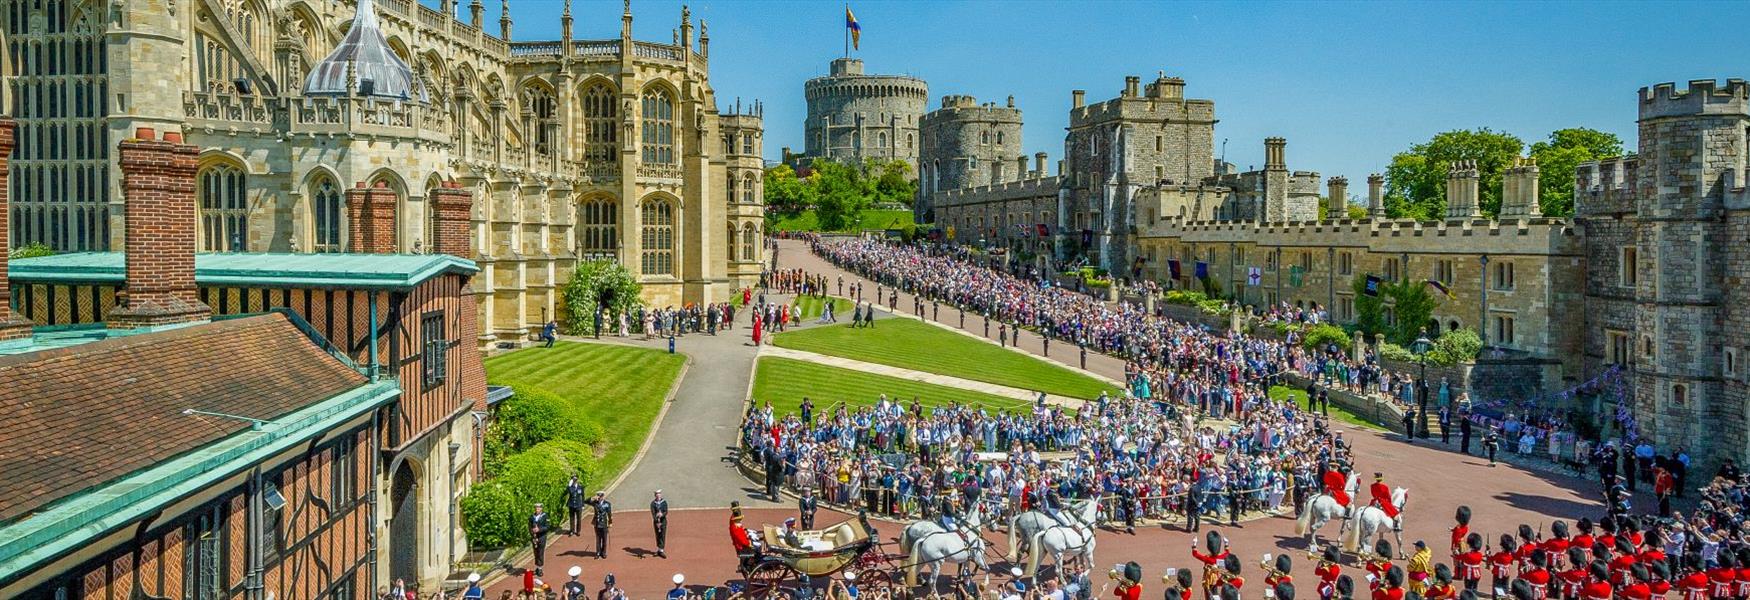 Royal Wedding at Windsor Castle